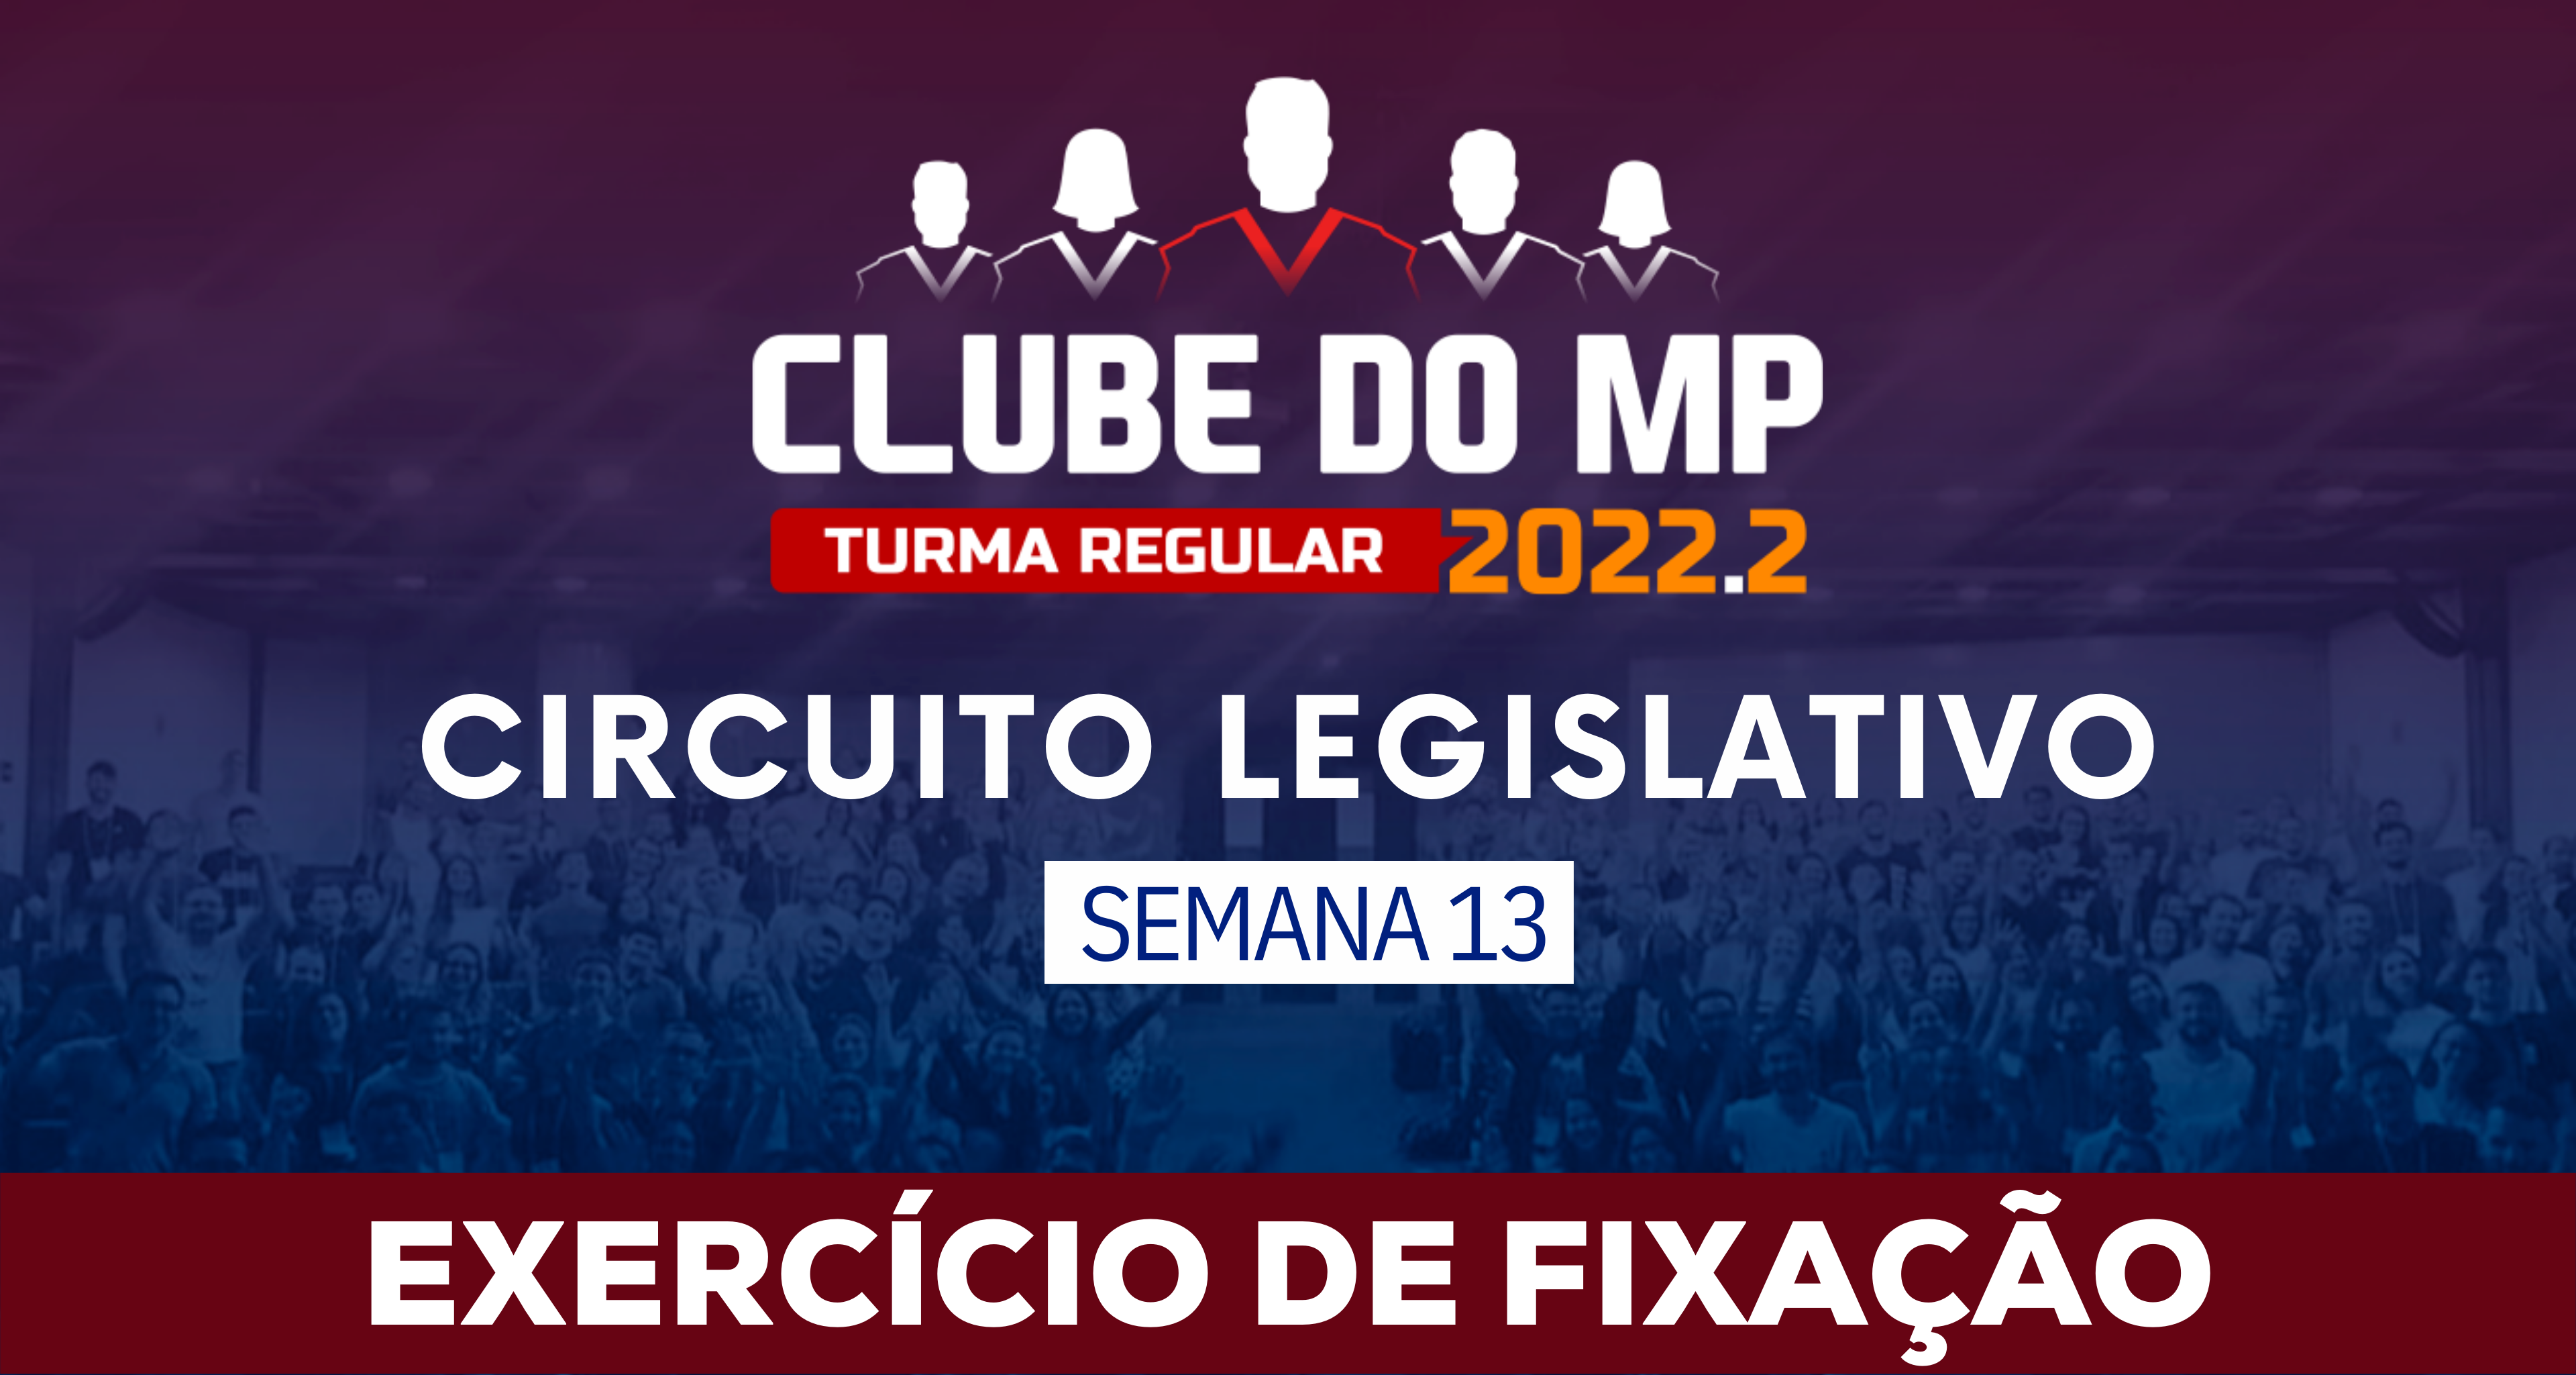 Circuito Legislativo 2022.2 (Clube do MP - Semana 13)